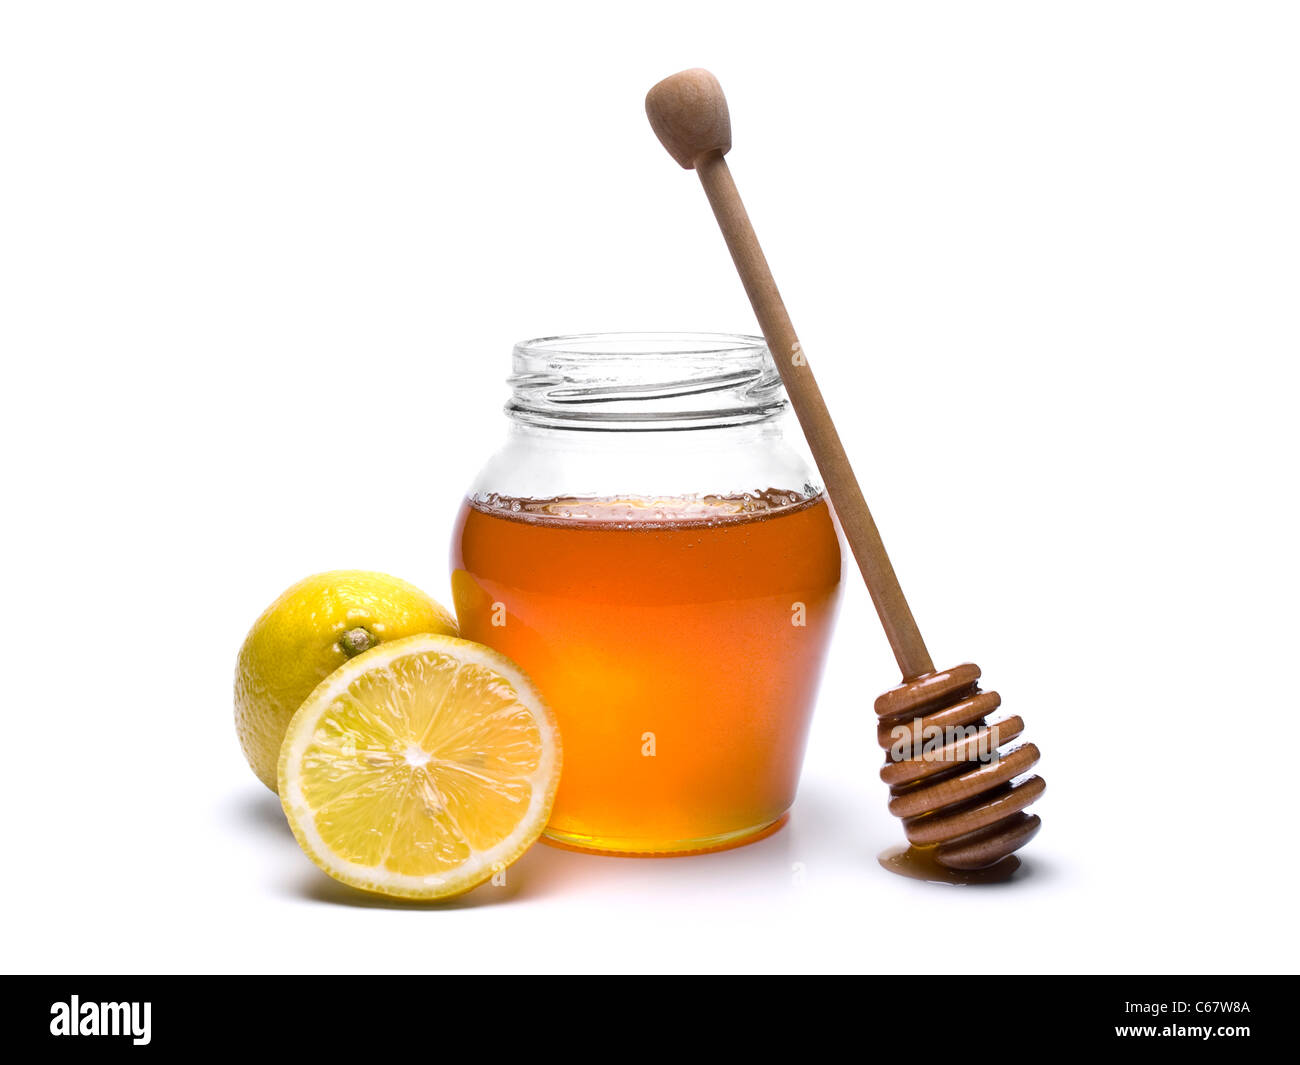 Un vasetto di miele con un drizzler in legno e limoni. Isolato su sfondo bianco. Foto Stock